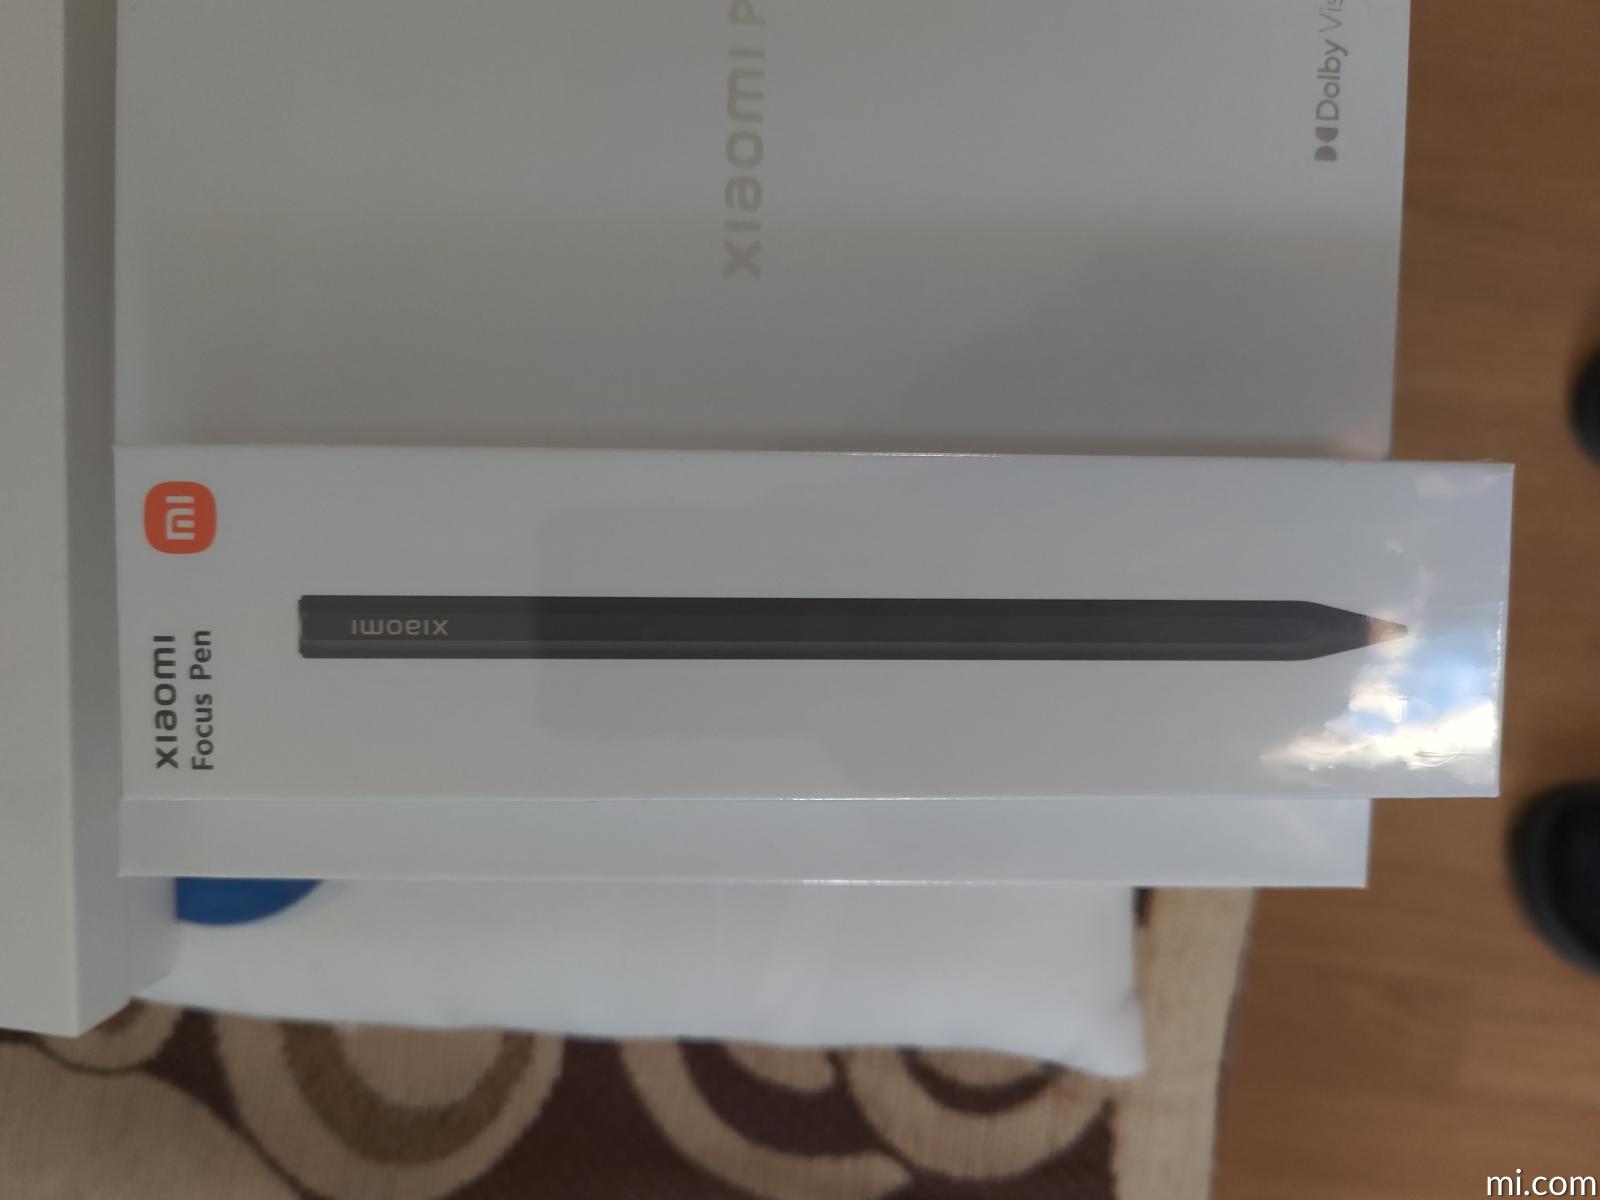 xiaomi-focus-pen - Xiaomi UK